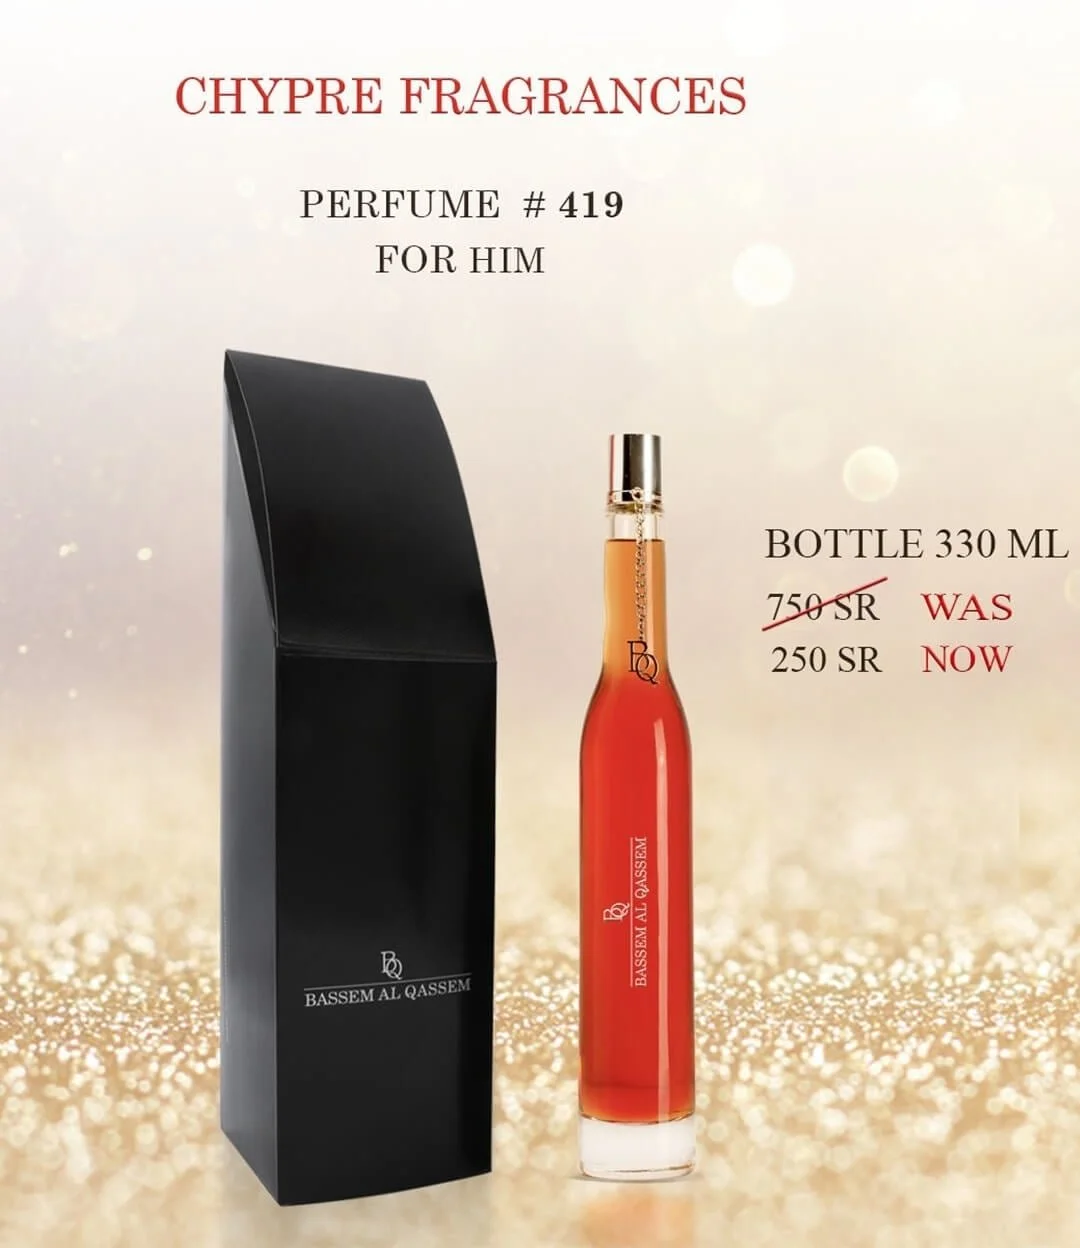 Perfume #419 Chypre Fragrance for Him by Bassem Al Qassem 